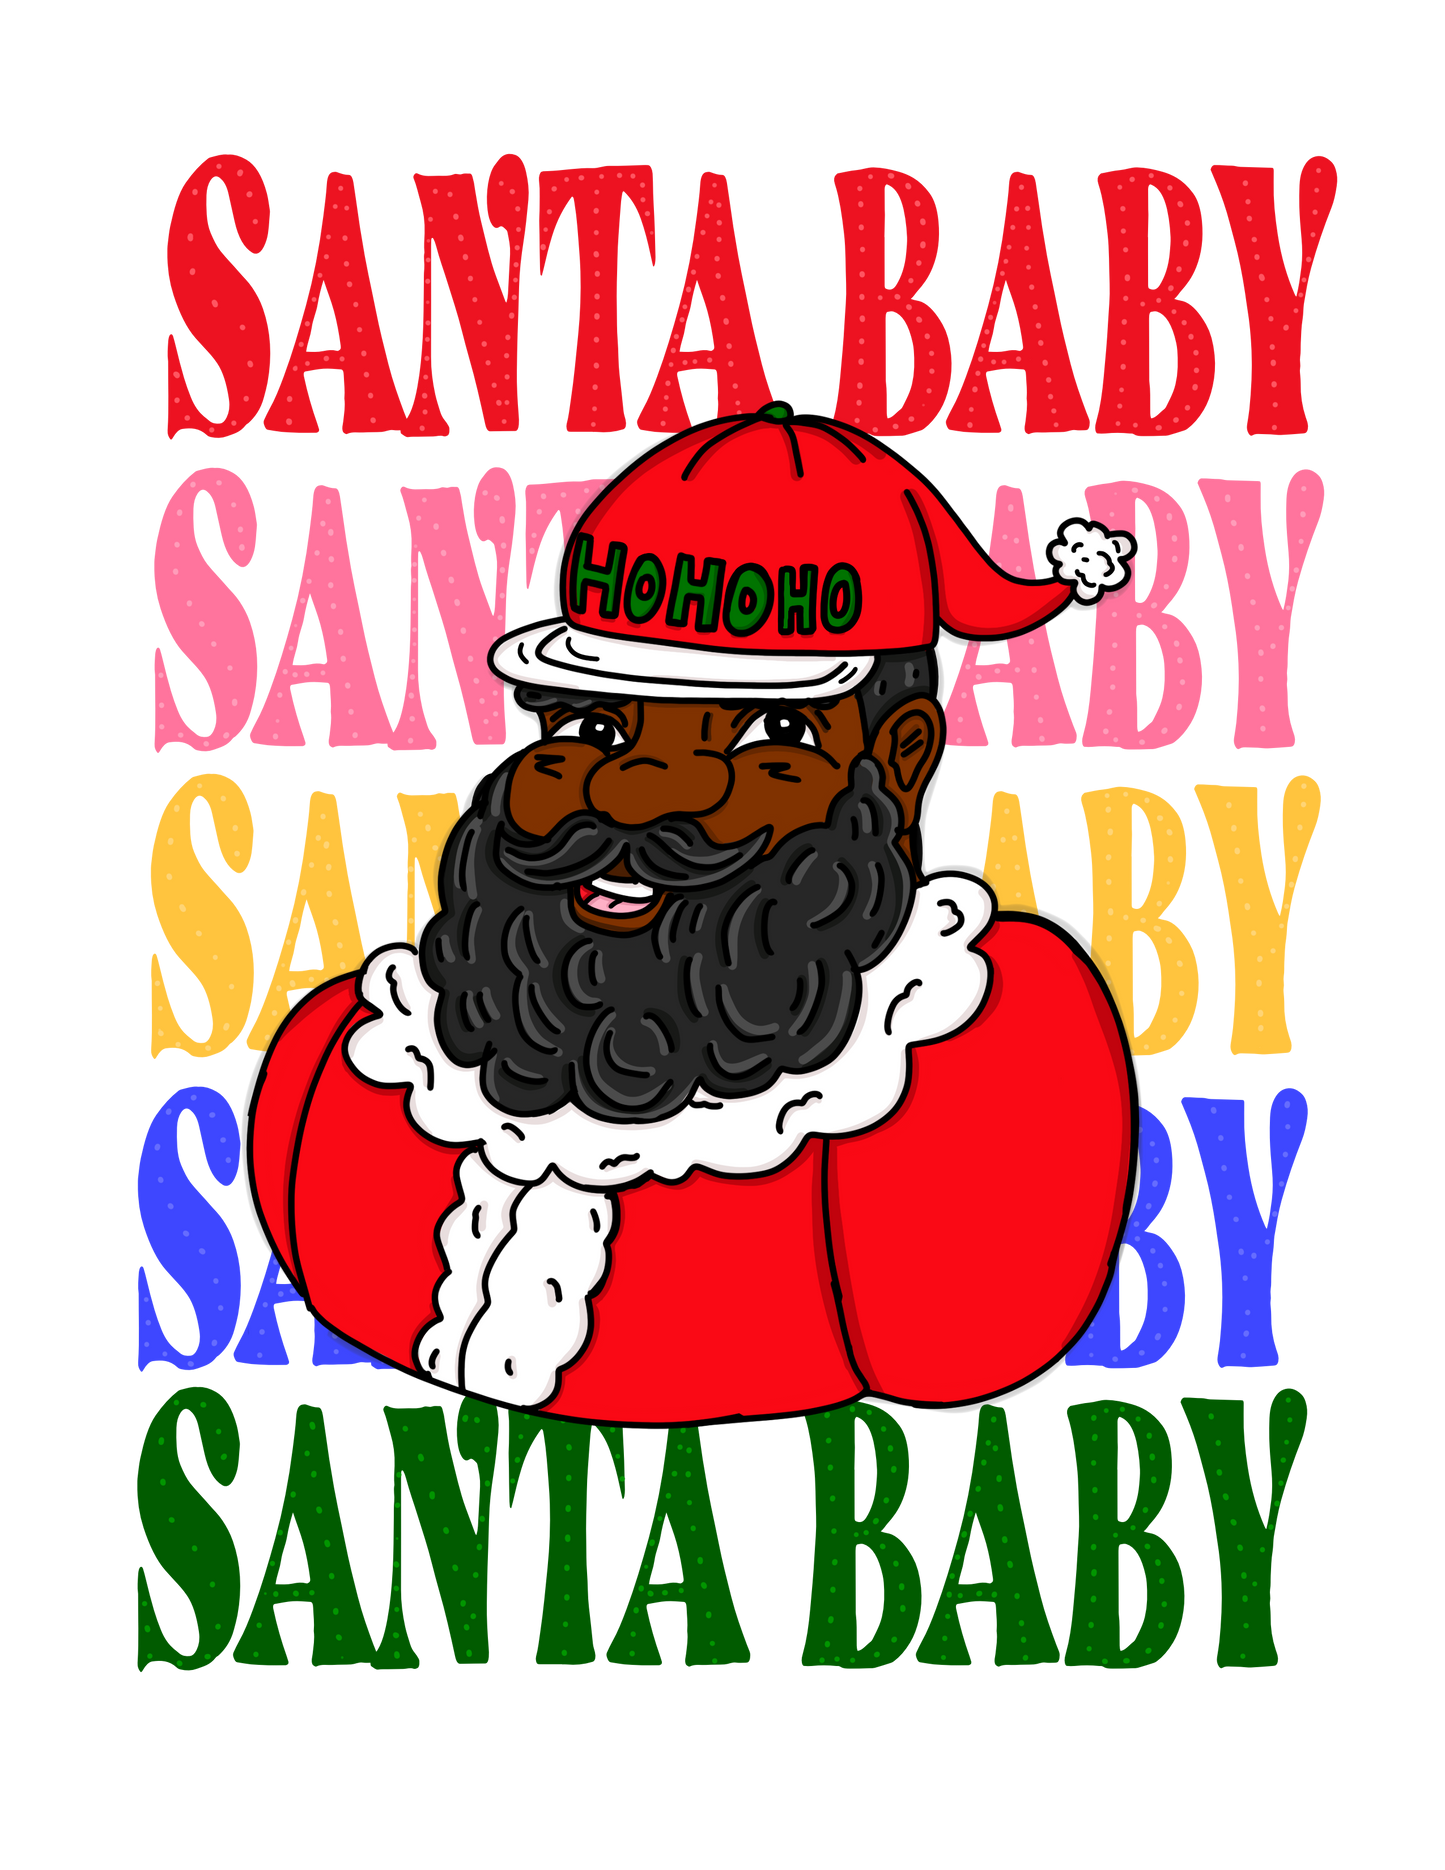 Santa Baby Greeting Card